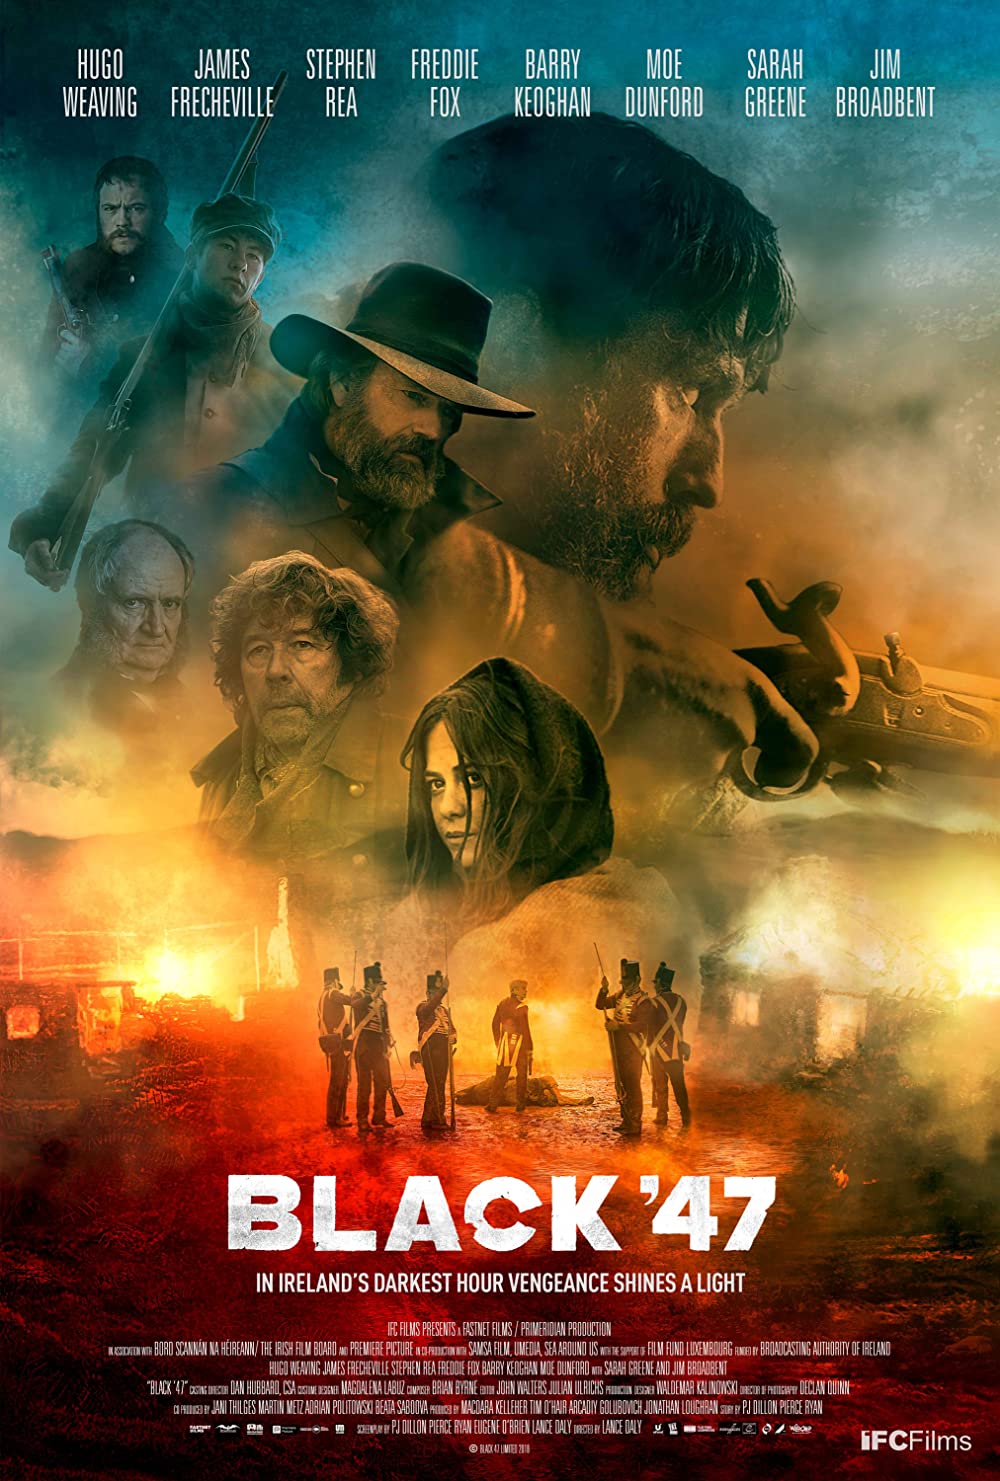 Filmbeschreibung zu Black 47 (OV)